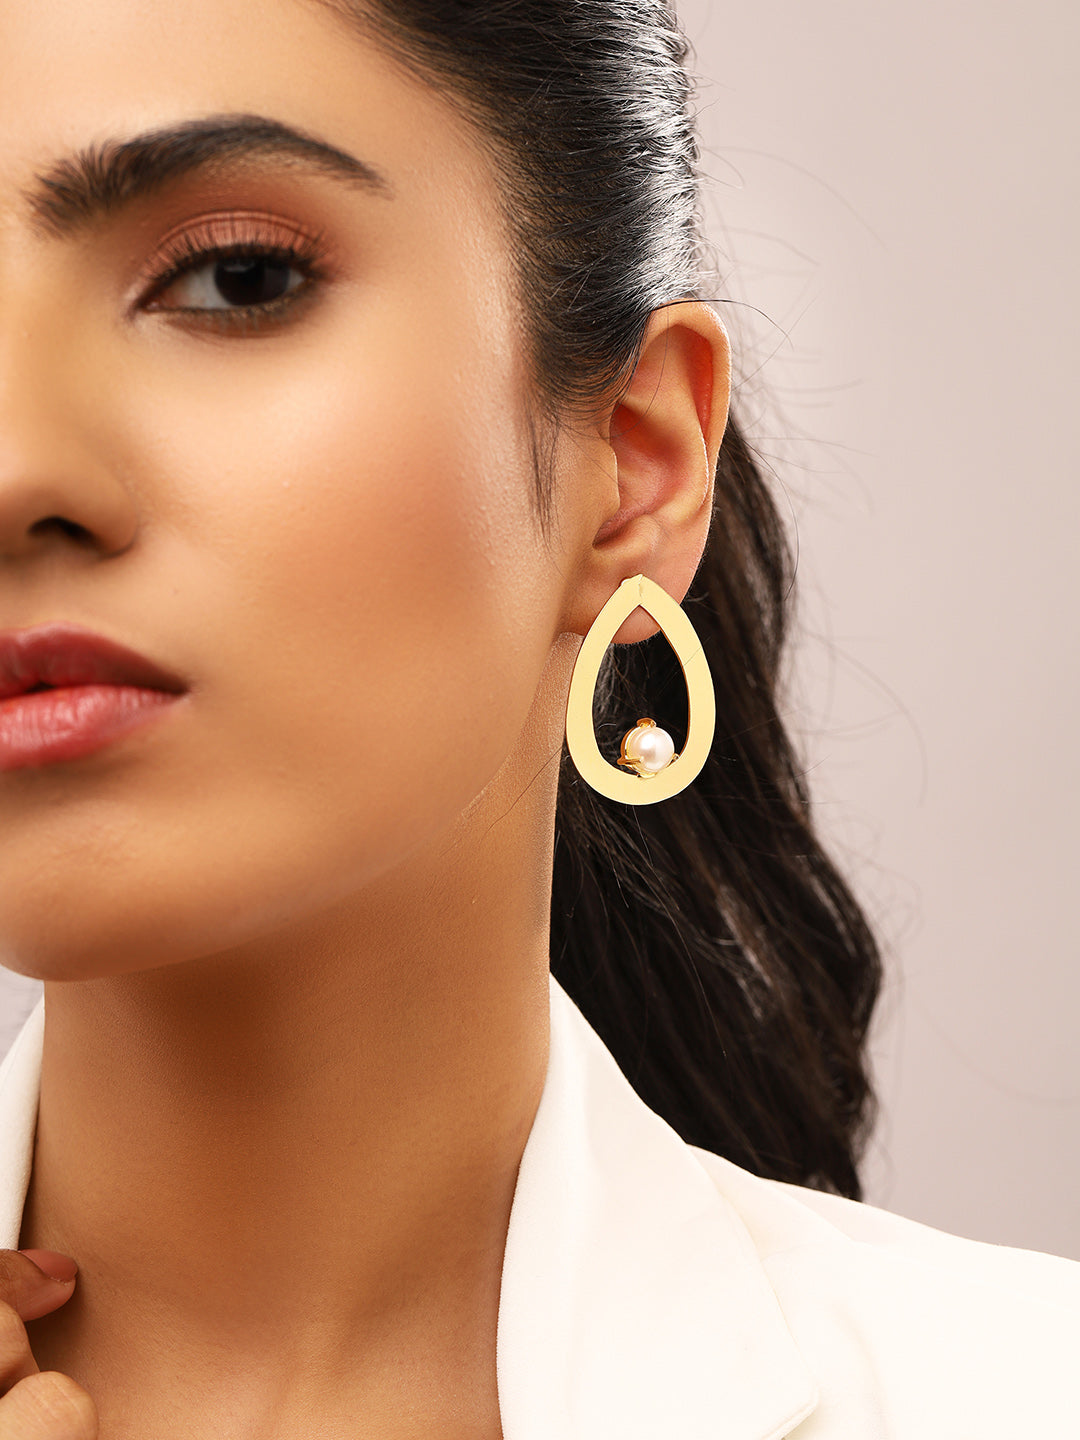 Priyaasi Matte Drop Shaped Pearl Gold Plated Earrings